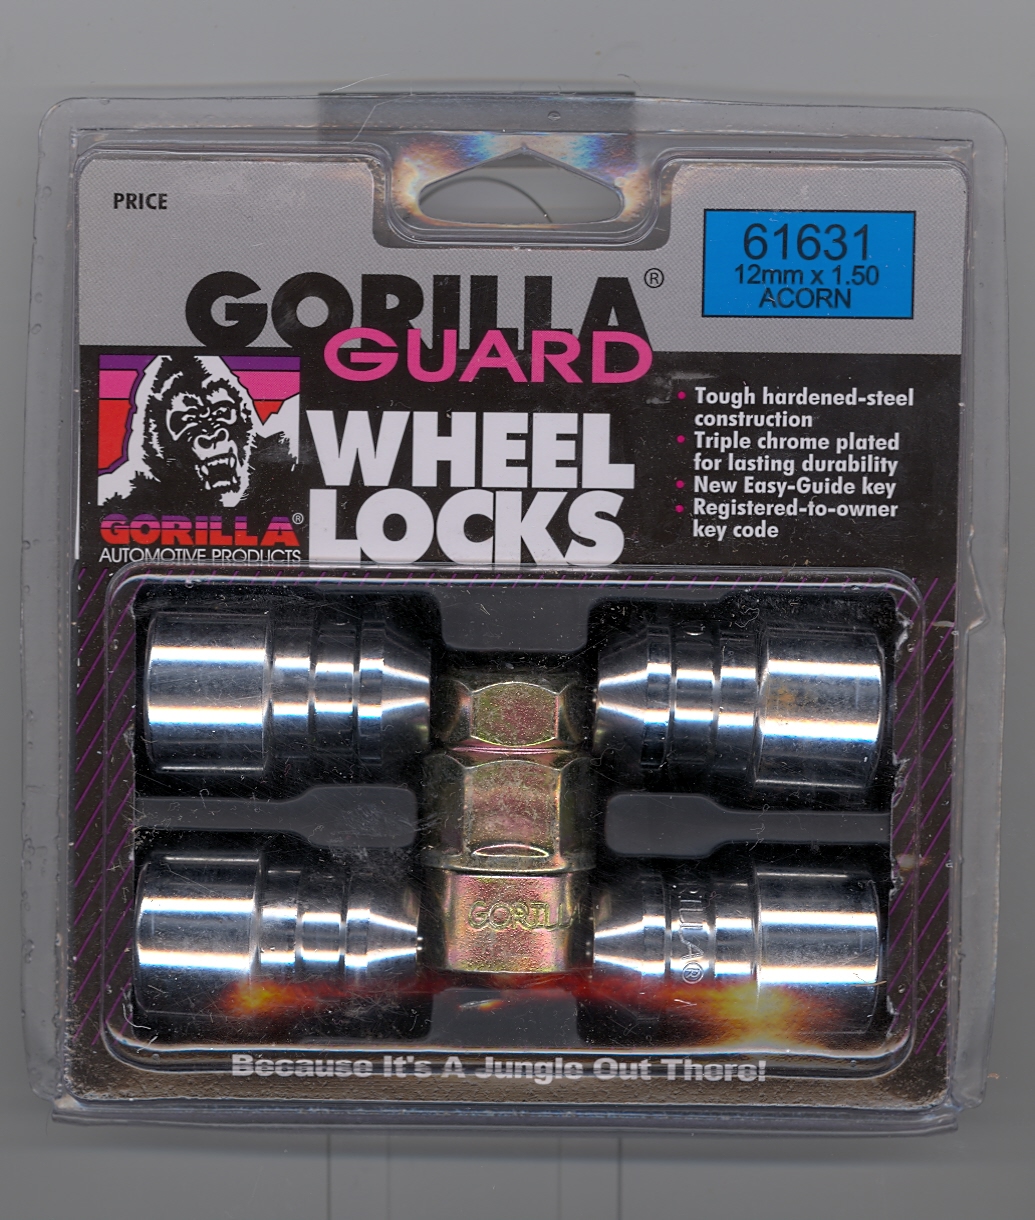 Gorilla Wheel locks.jpg